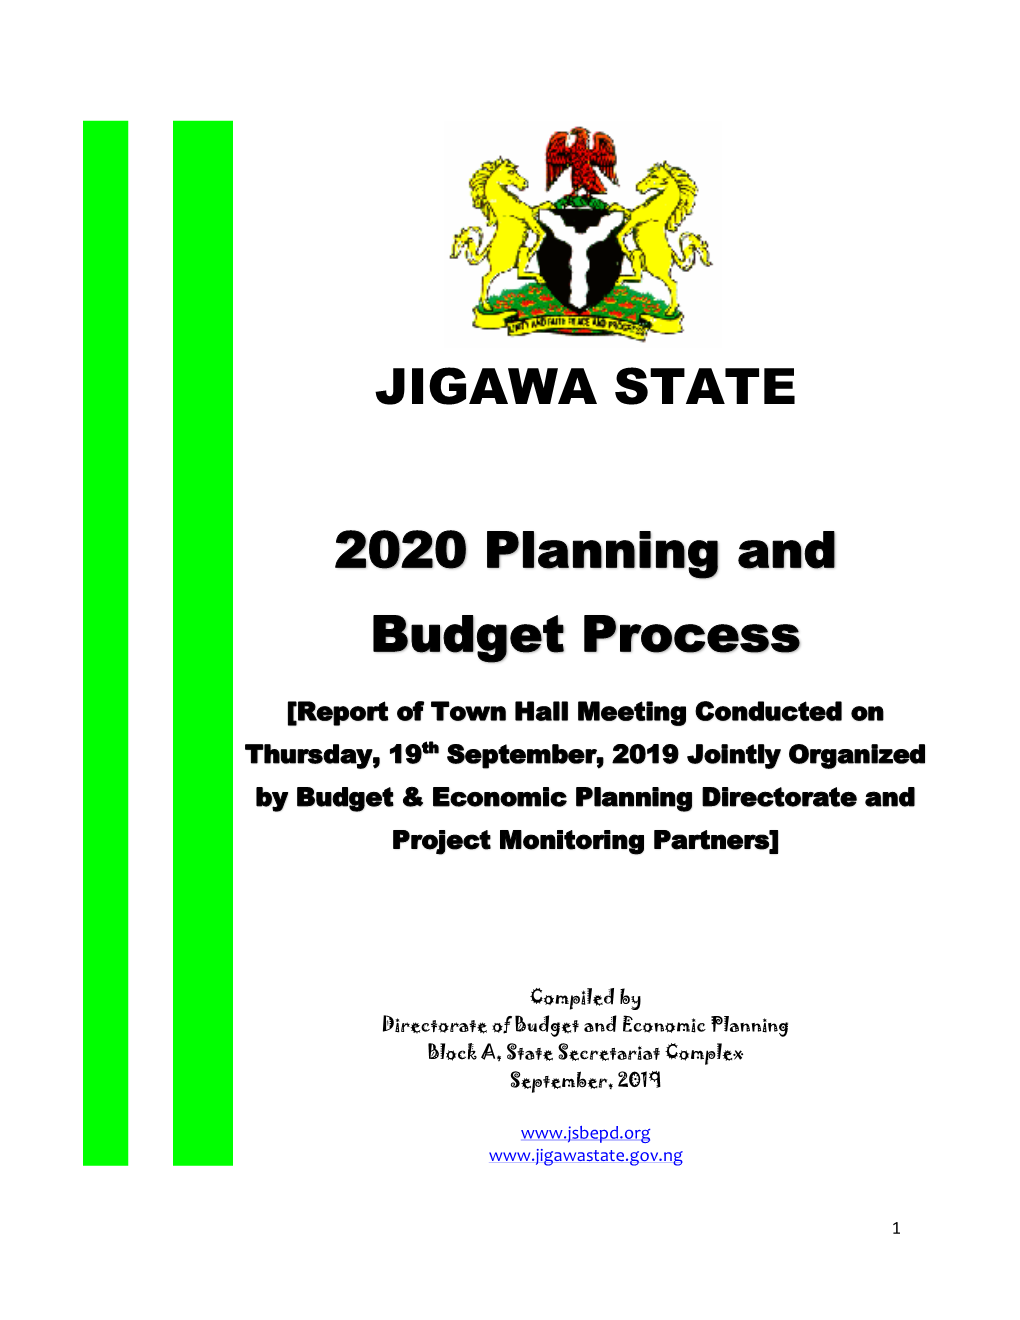 JIGAWA STATE 2020 Planning and Budget Process